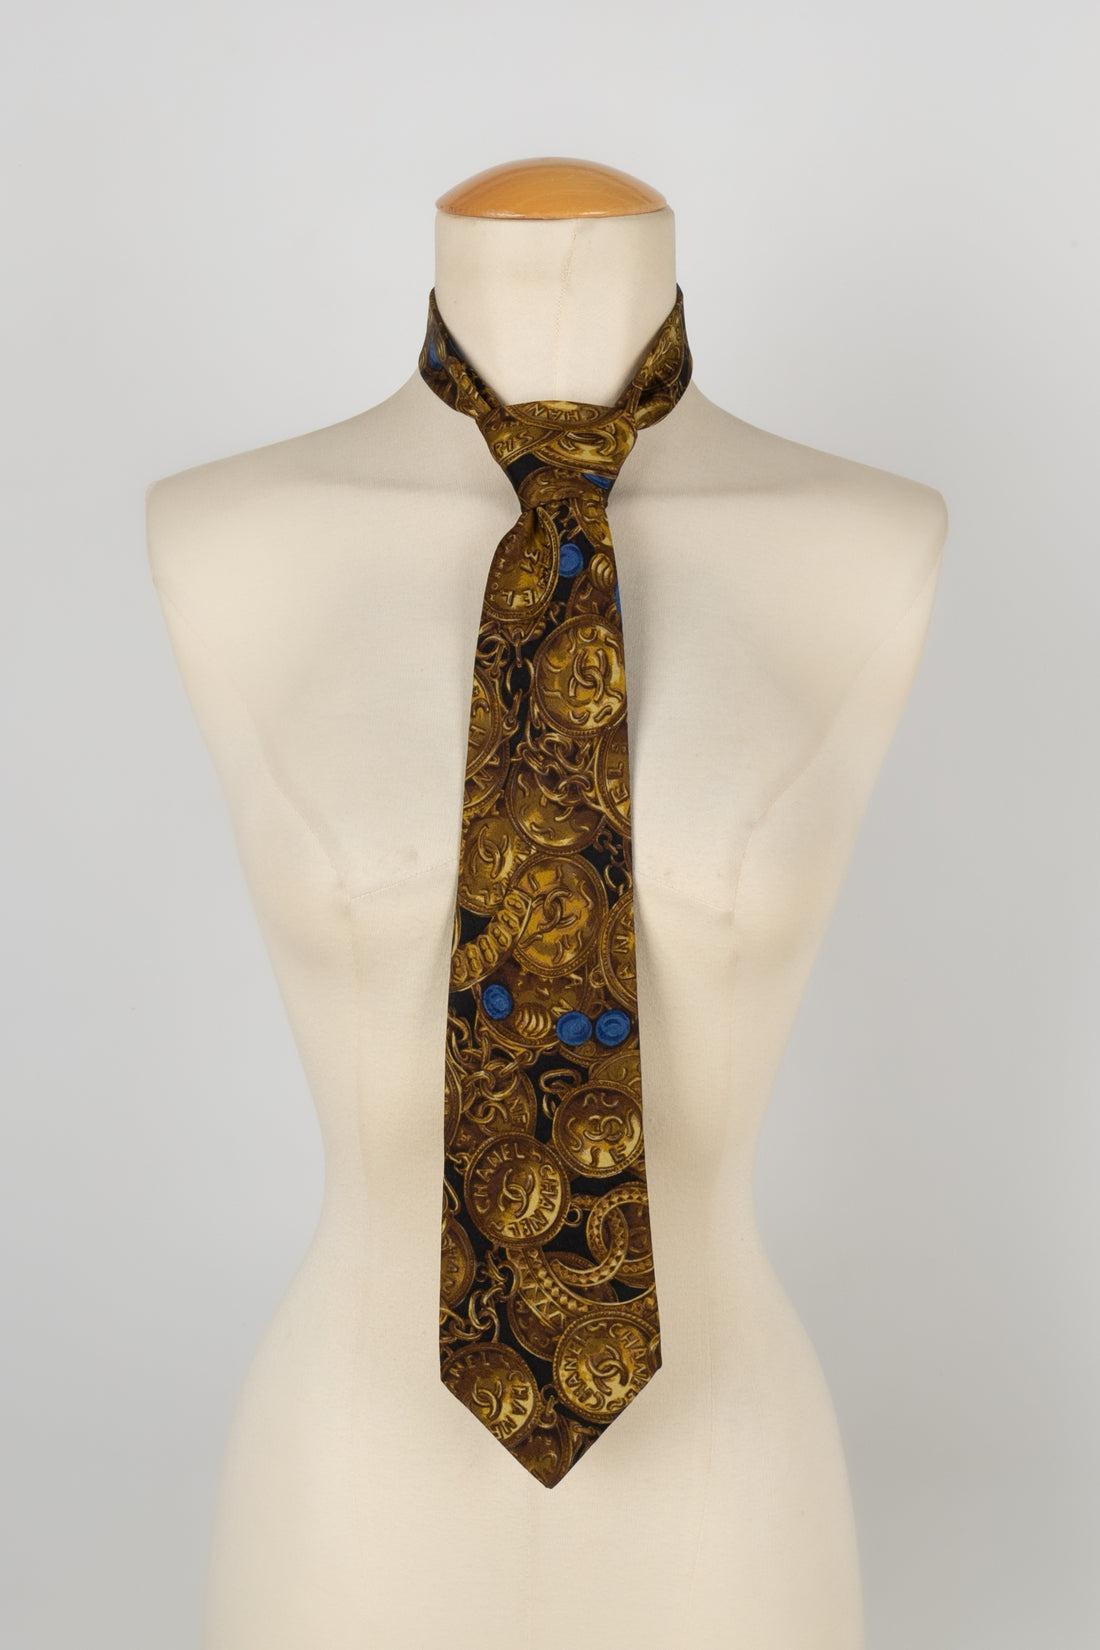 Chanel -  (Fabriqué en France) Cravate en soie imprimée avec des bijoux Chanel.

Informations complémentaires :
Condit : Très bon état.
Dimensions : Longueur : 140 cm

Référence du vendeur : ACC146